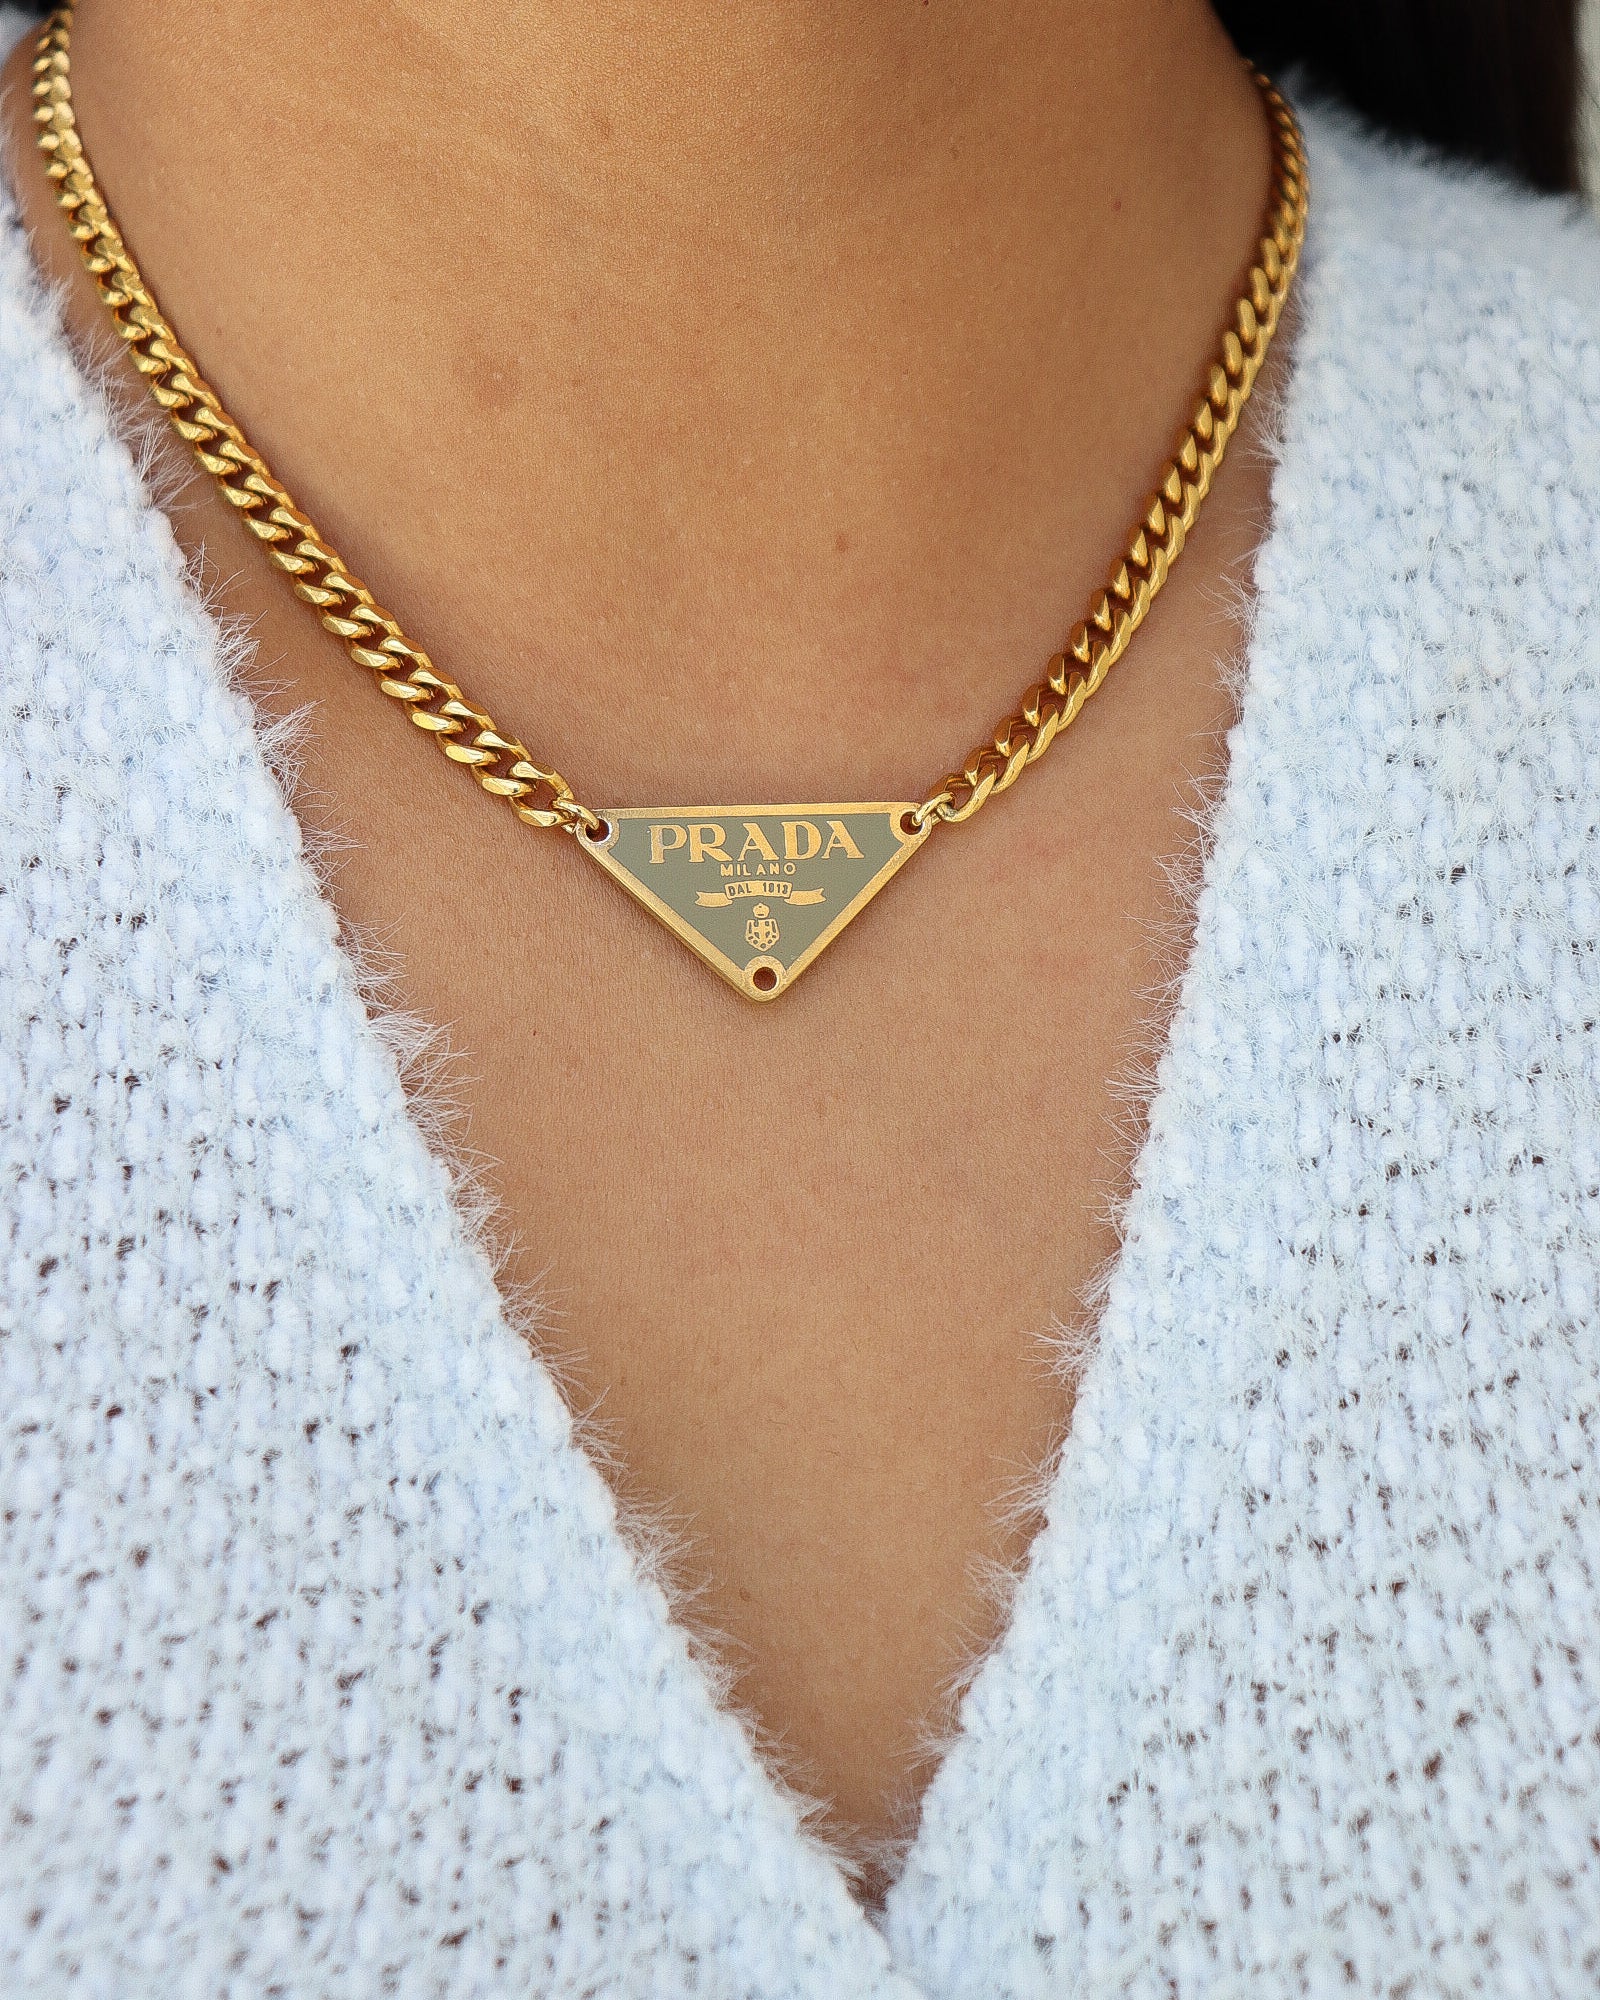 Prada necklace in mint | Shop Canela Vintage – Shop Canela Vintage